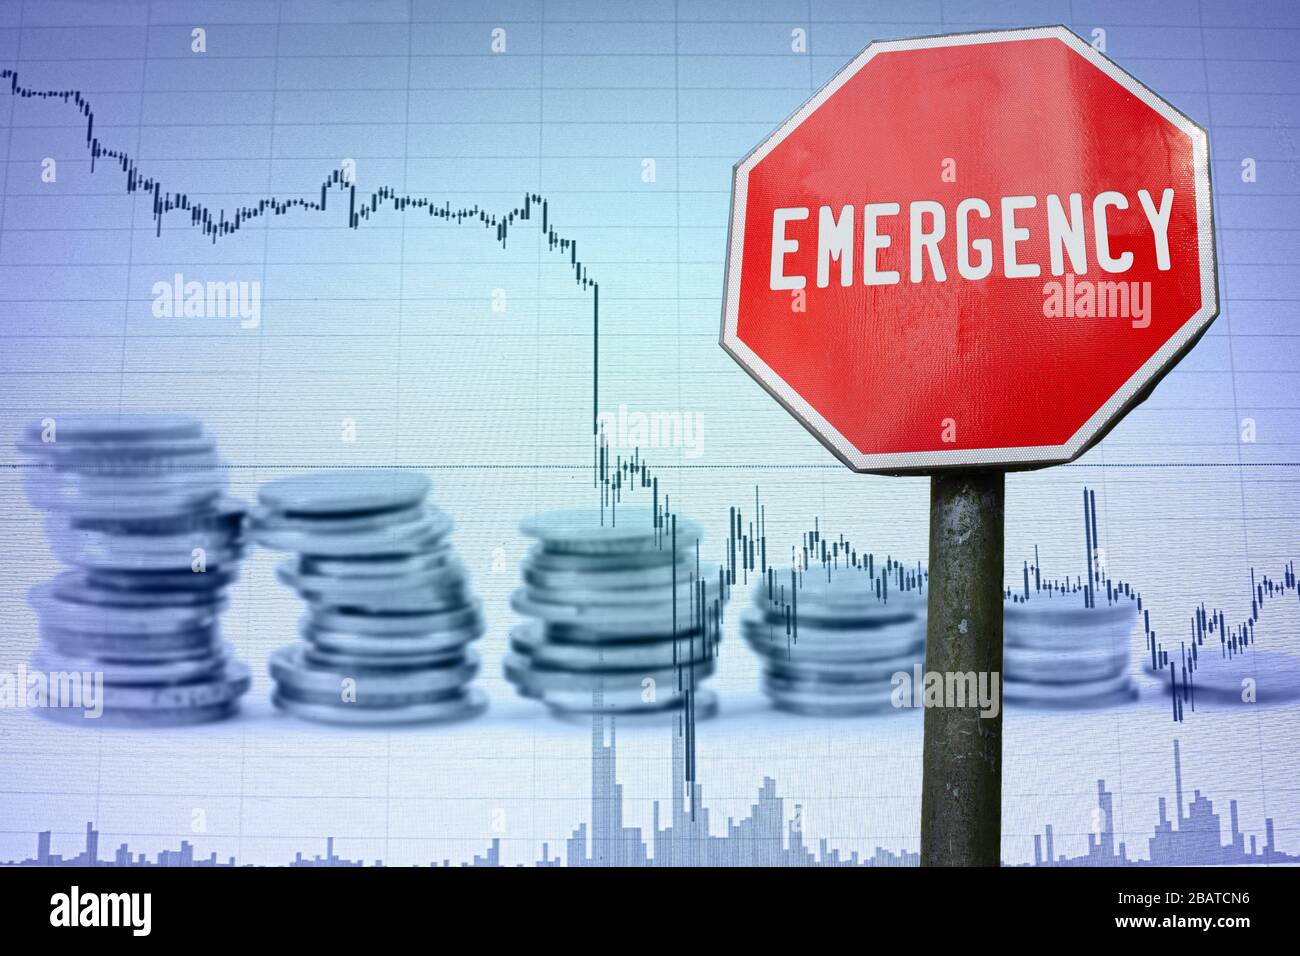 Notabzeichen auf dem wirtschaftlichen Hintergrund - Diagramm und Münzen. Finanzunfall in der Weltwirtschaft wegen Coronavirus. Weltwirtschaftskrise, Rezession. Stockfoto